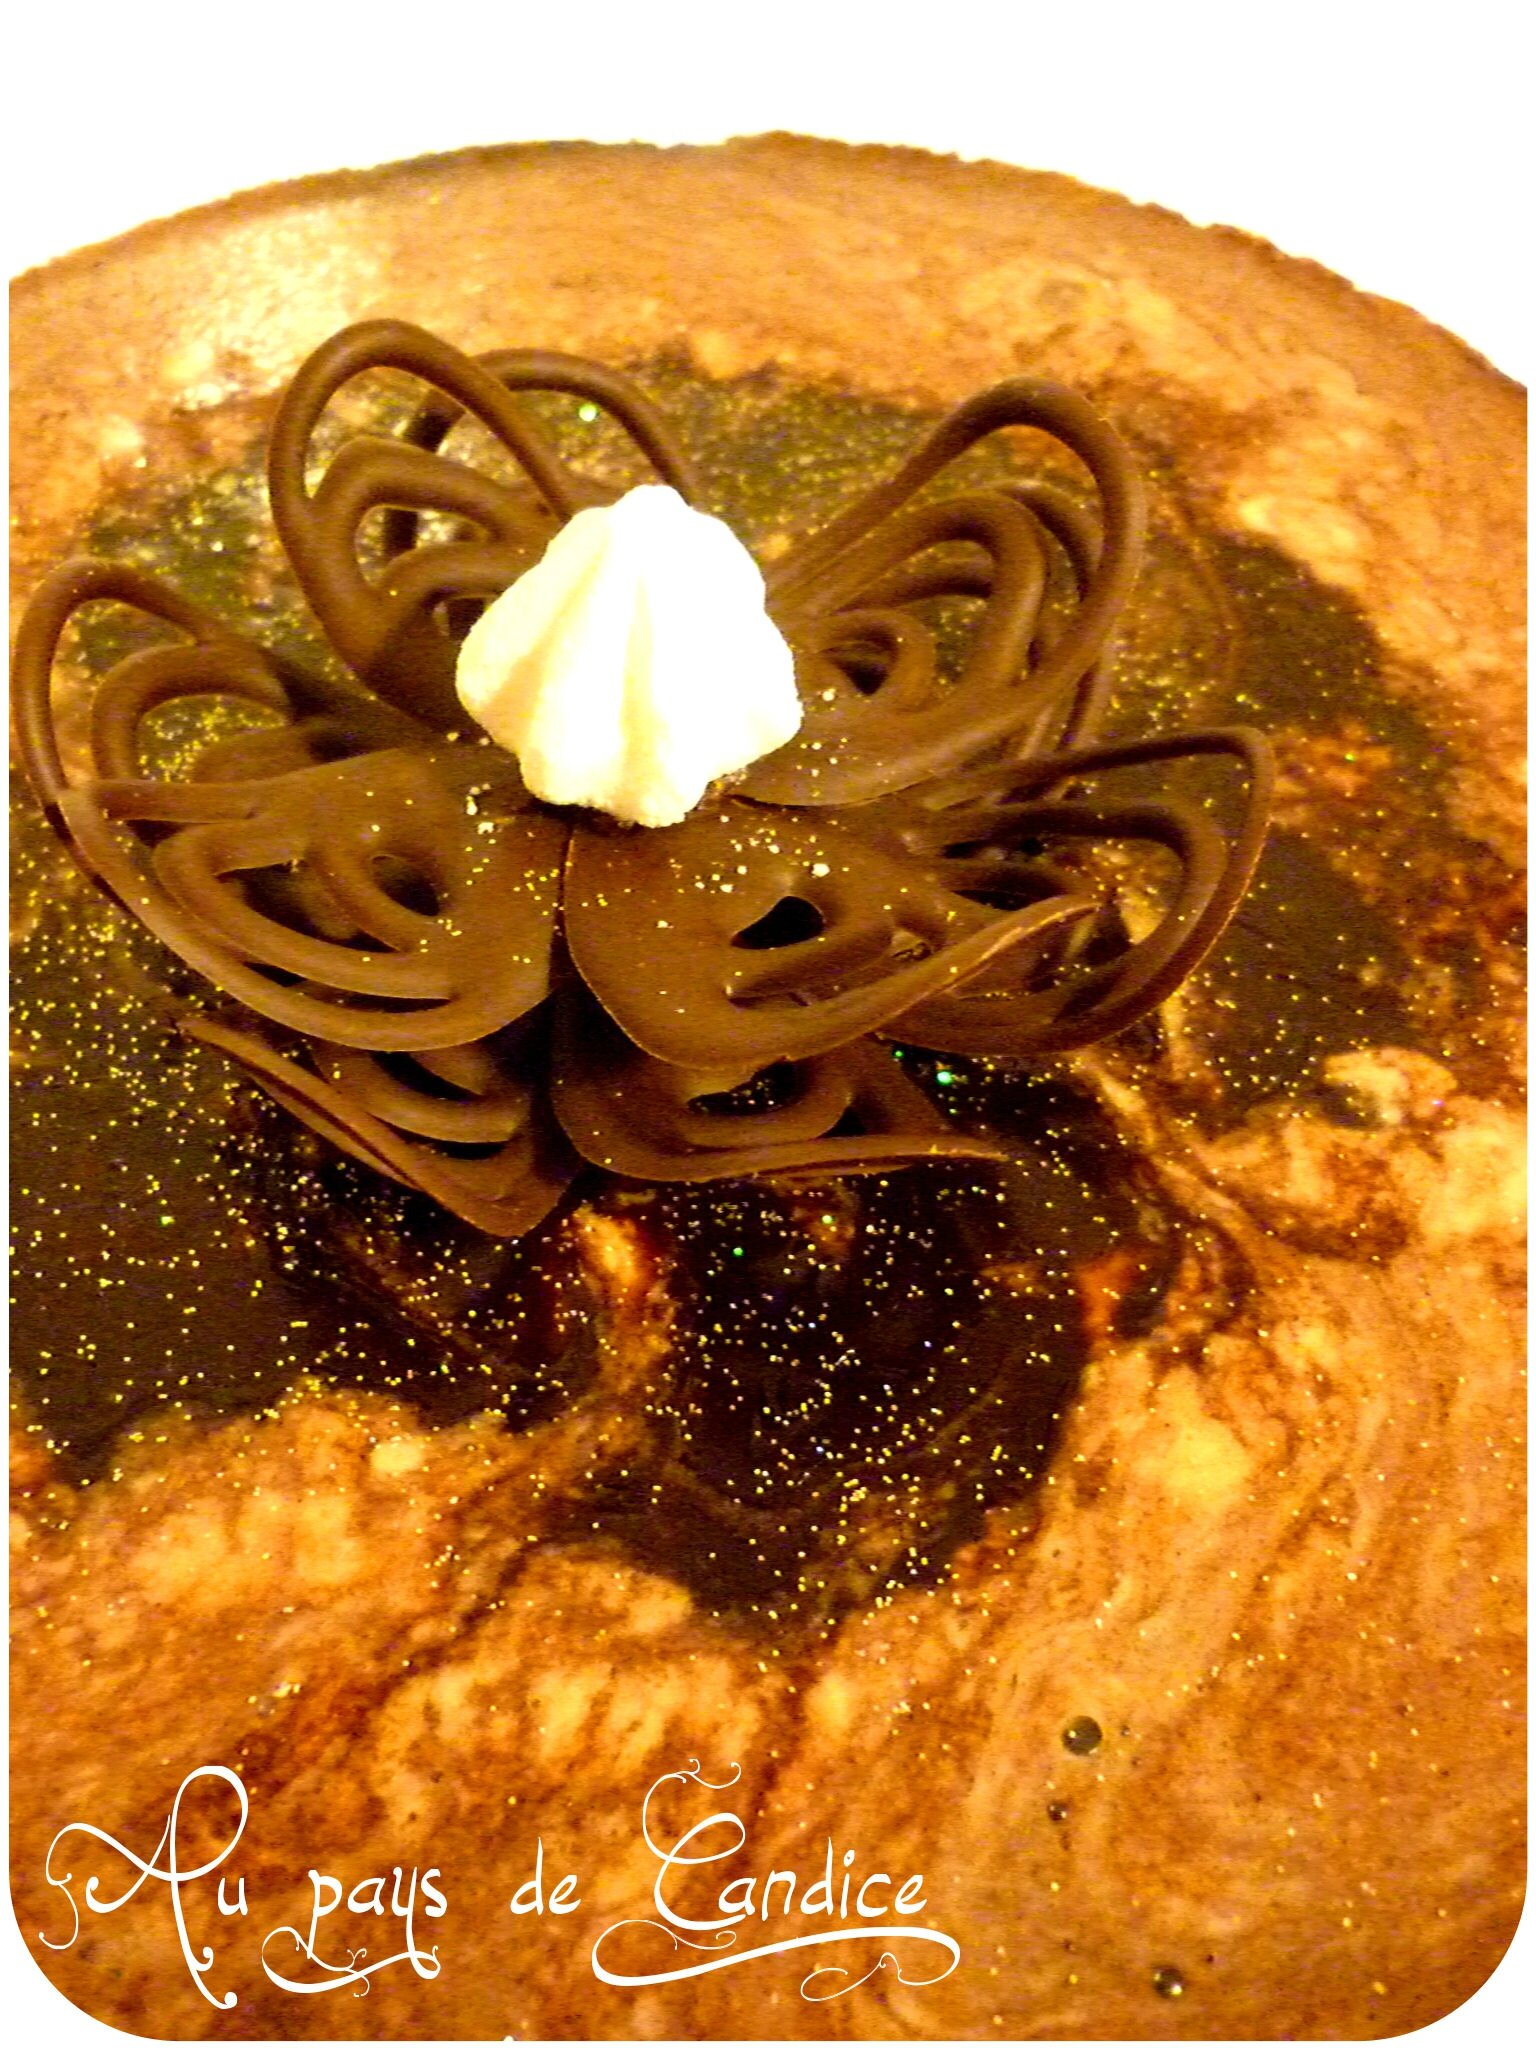 Gâteau Reine des Neiges - saveur chocolat framboise avec sucre coloré -  Elodie cuisine pour vous partager sa passion